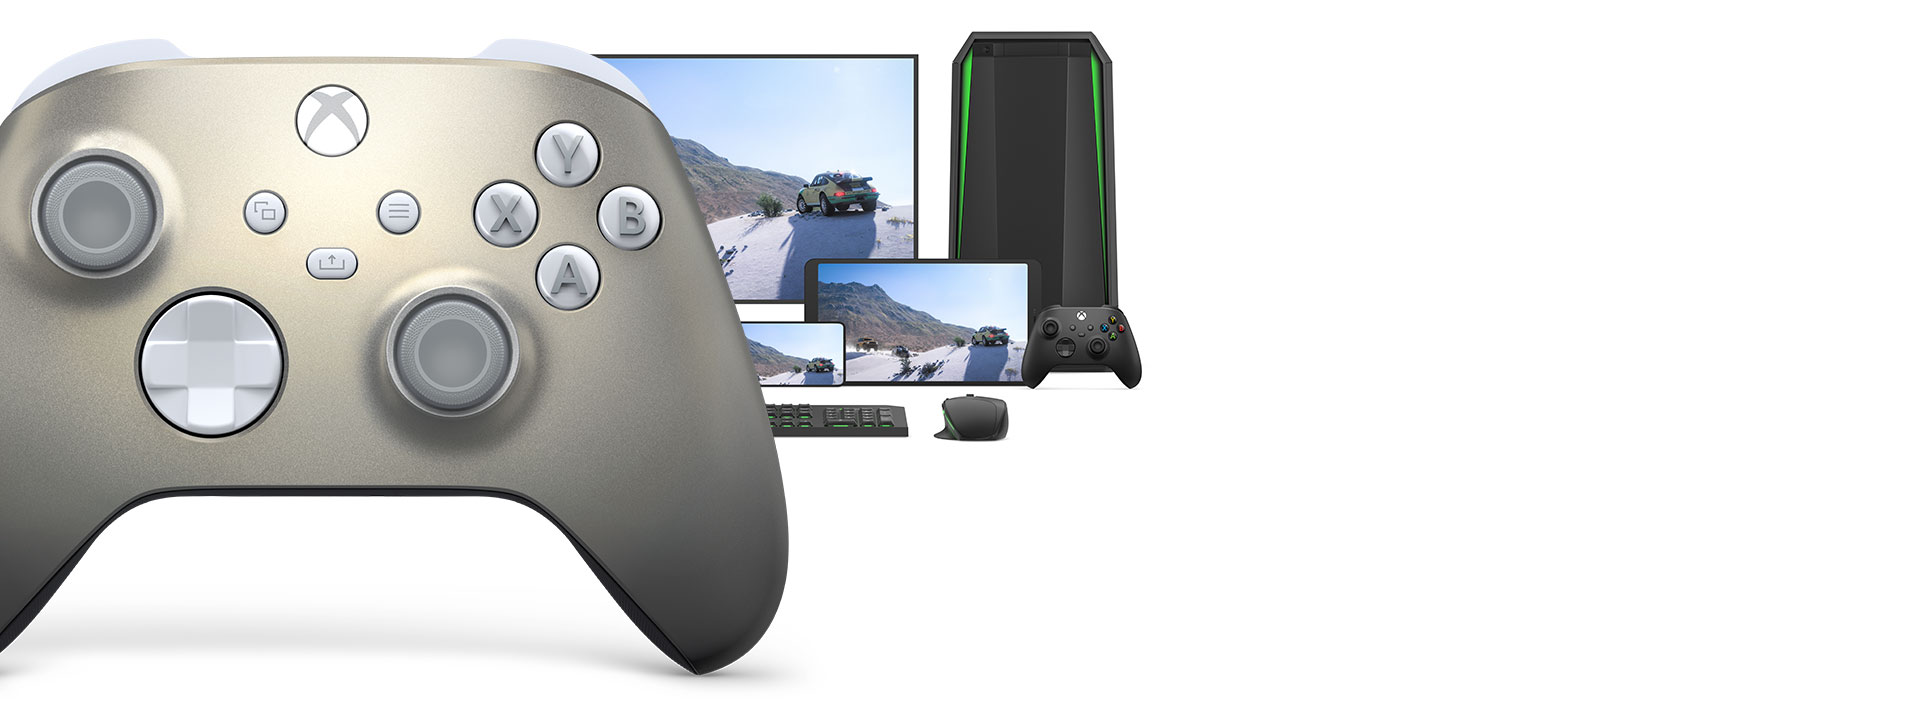 Comando Sem Fios Xbox - Lunar Shift Special Edition junto a um computador, uma TV e uma Xbox Series S